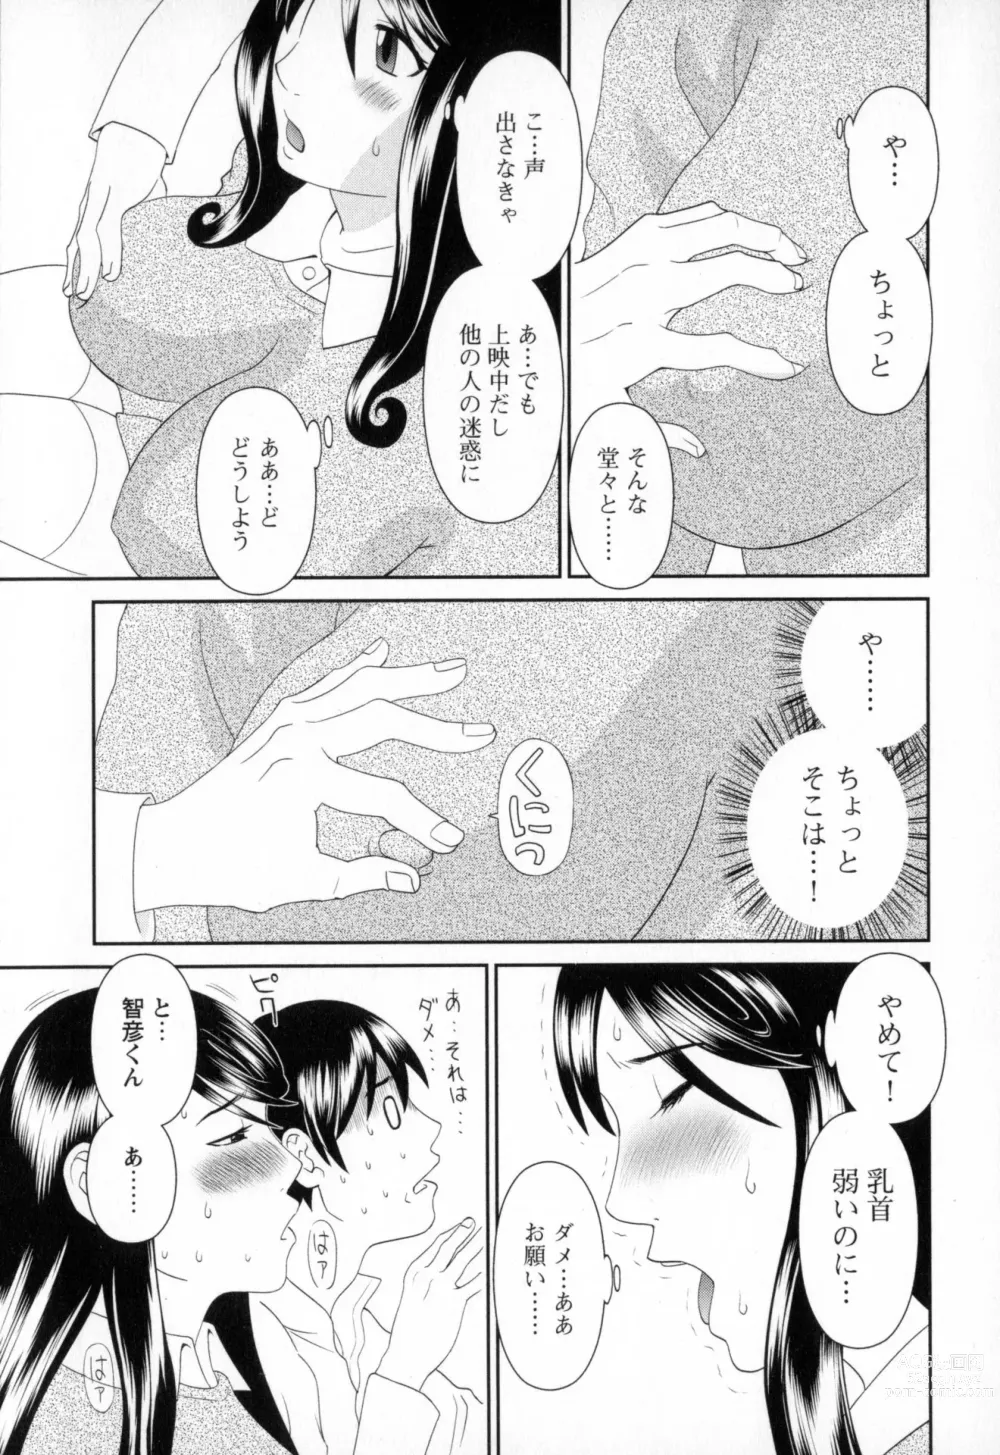 Page 169 of manga Gokuraku Ladies - Paradise Ladies Koukotsu Hen